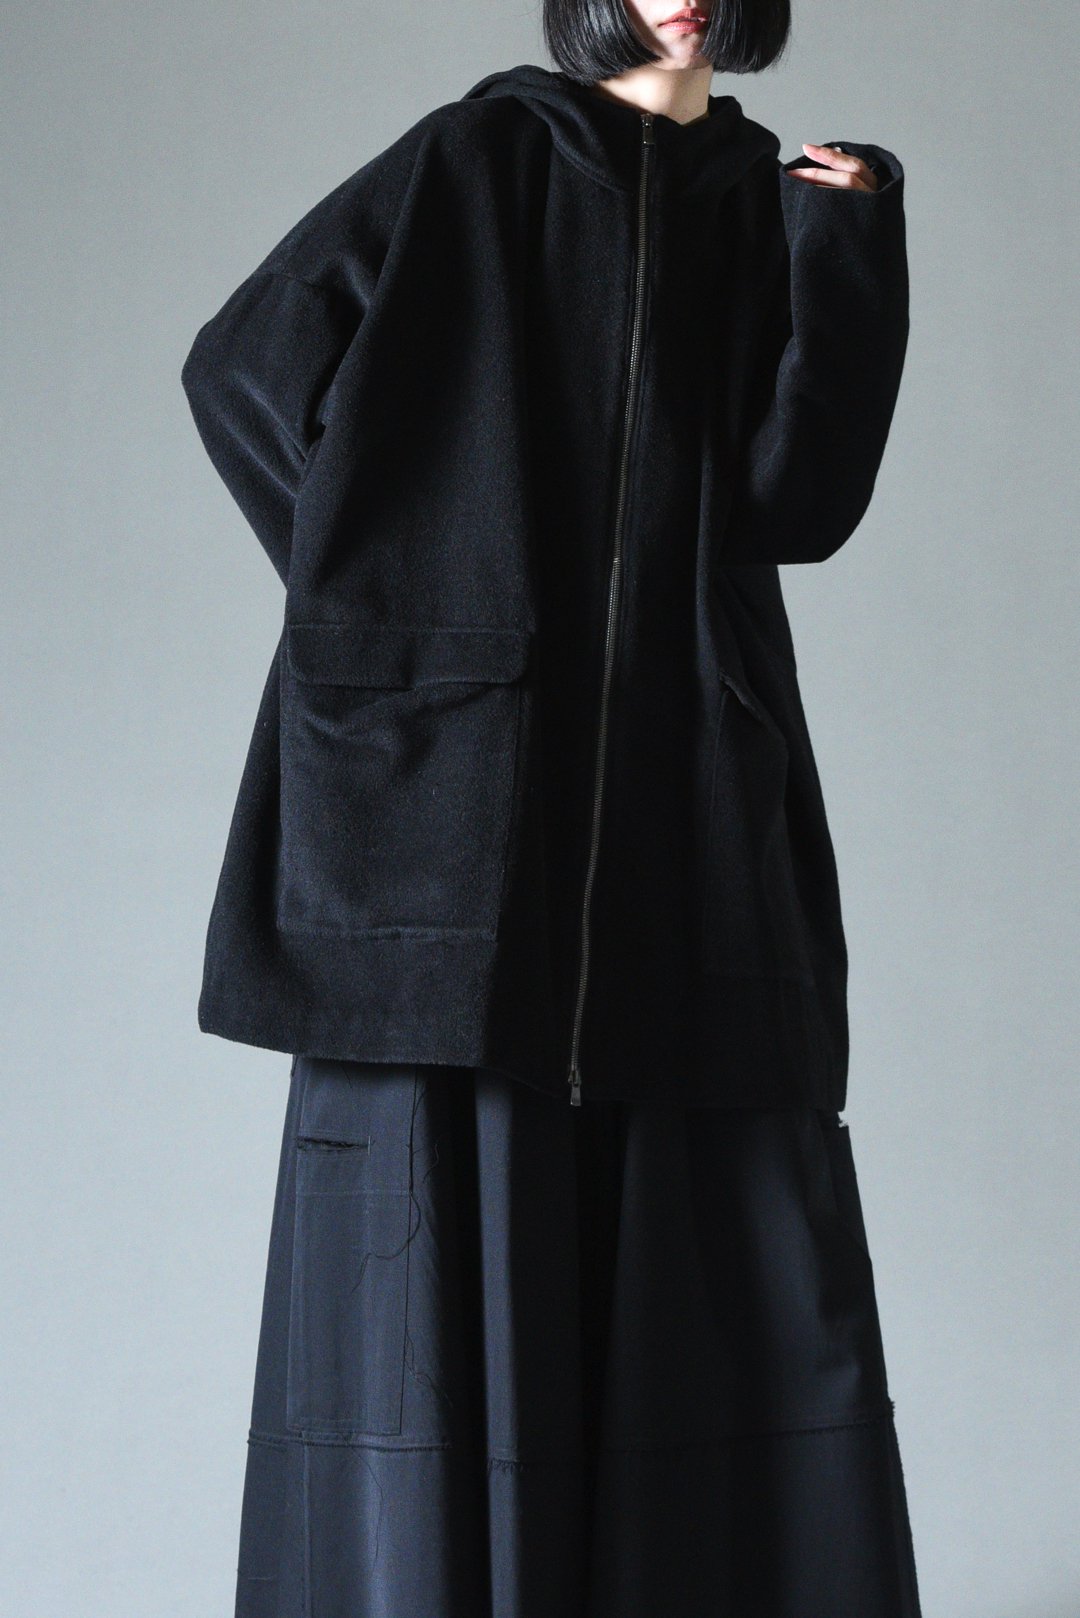 BISHOOL Angola Wool Hood Big Jacket袖丈50cm